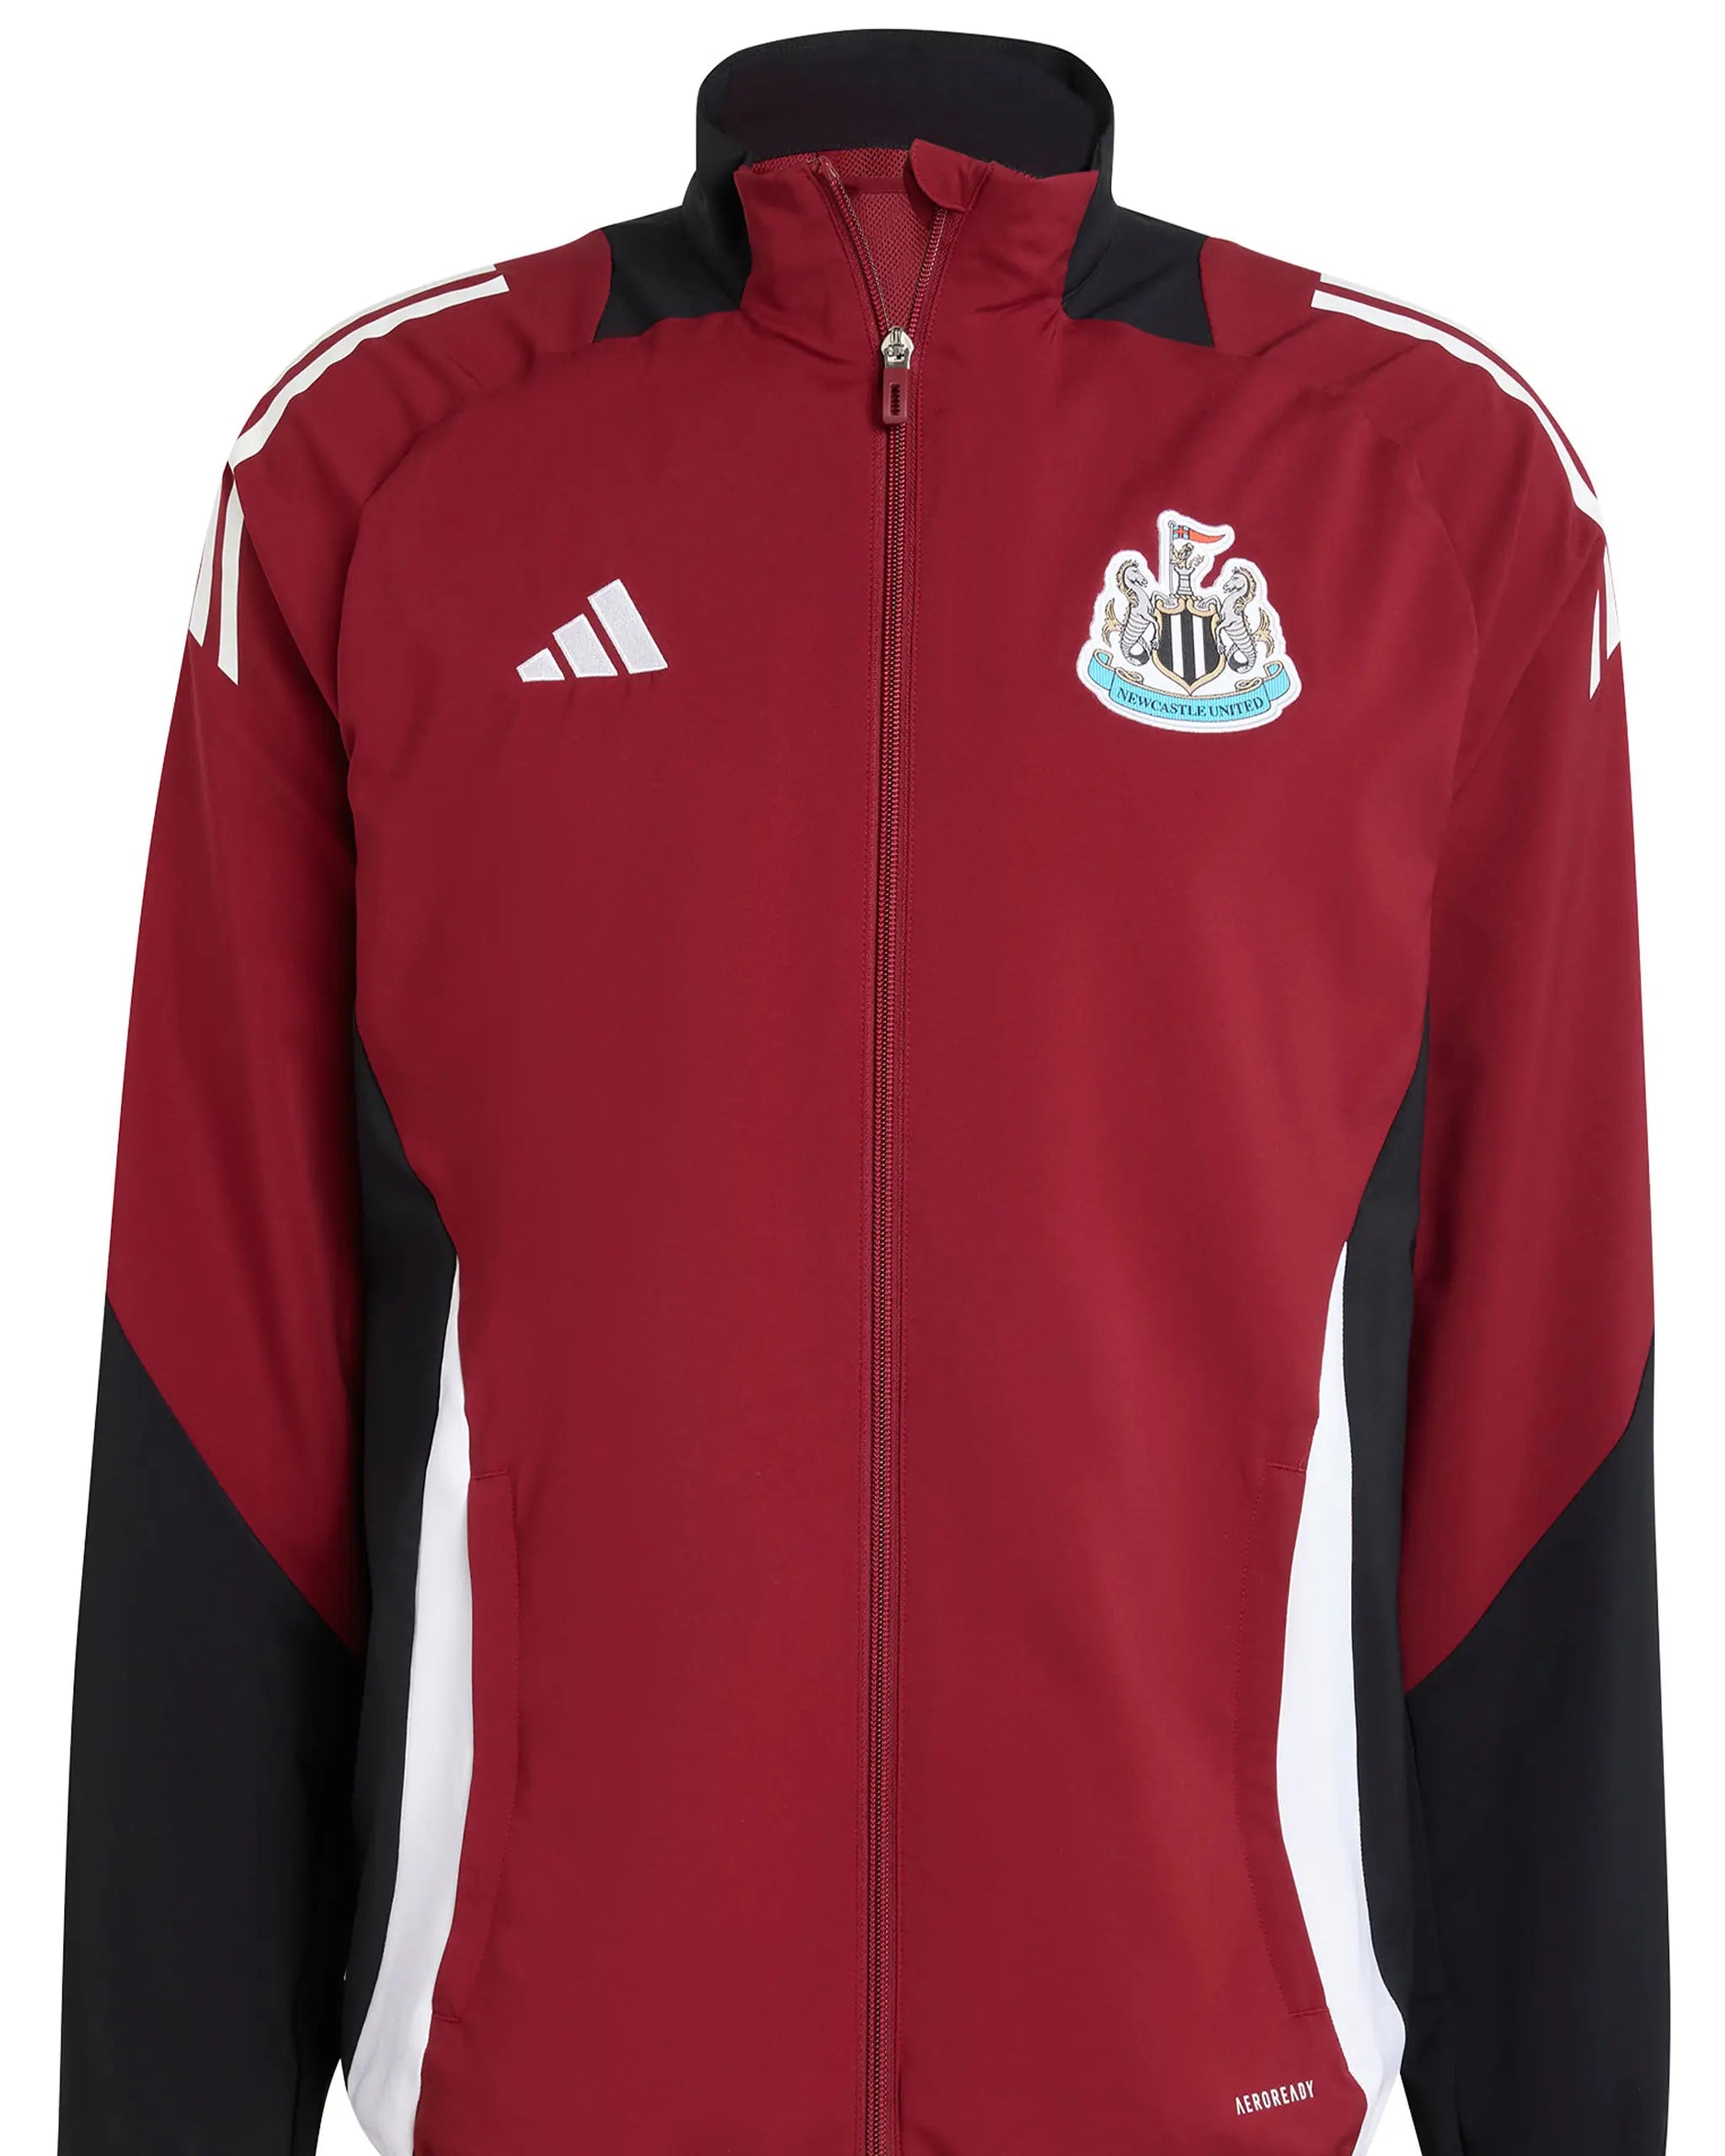 Newcastle United adidas 24/25 Players' Presentation Jacket